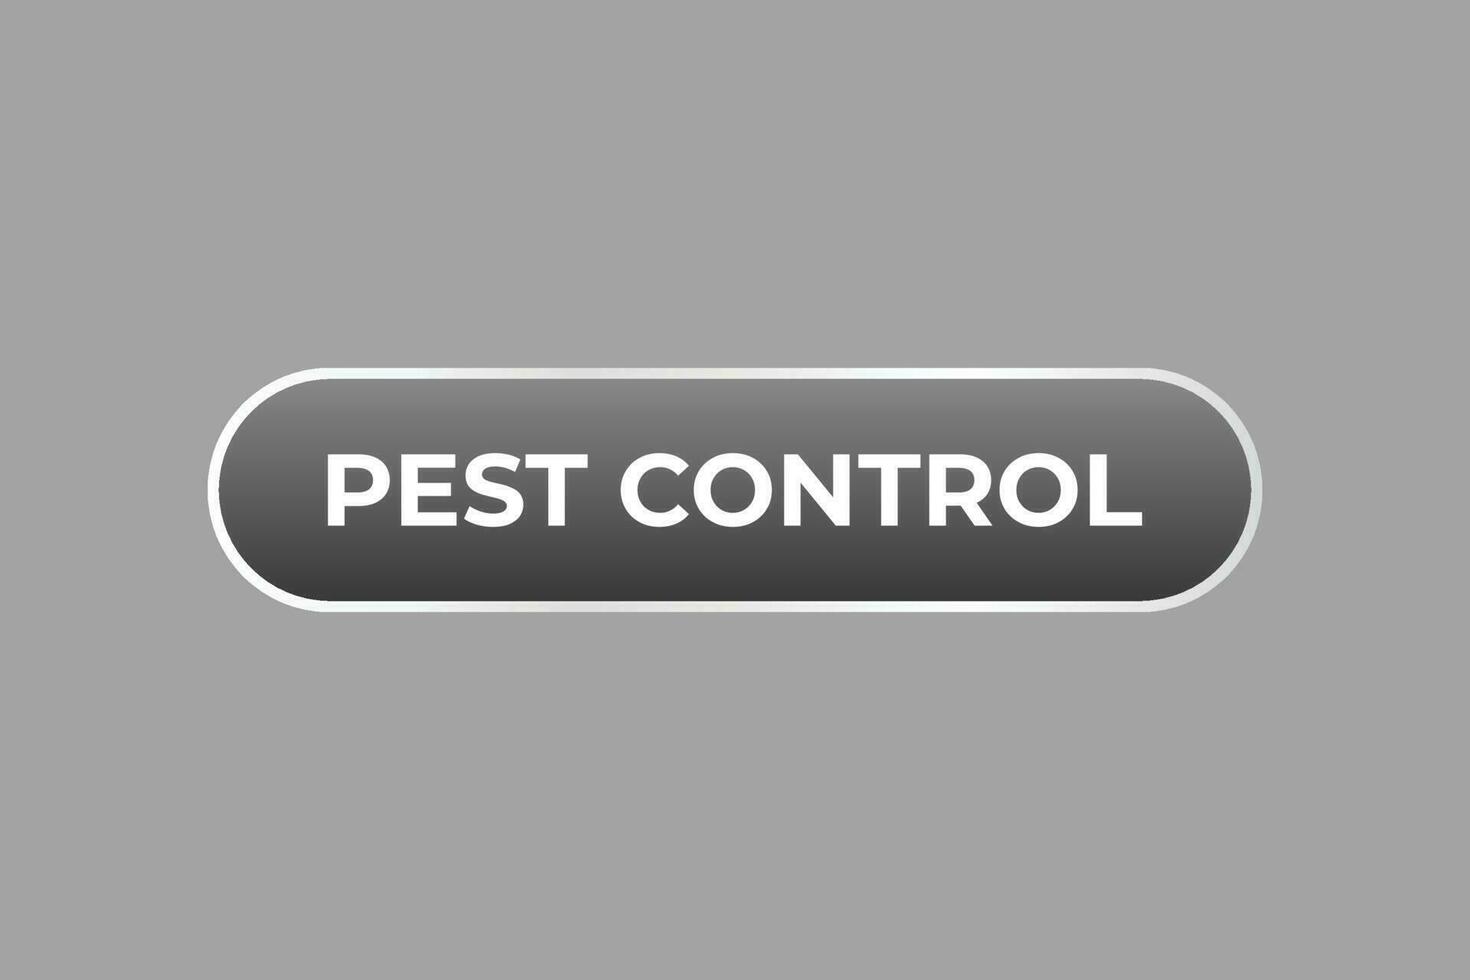 Pest Control Button. Speech Bubble, Banner Label Pest Control vector